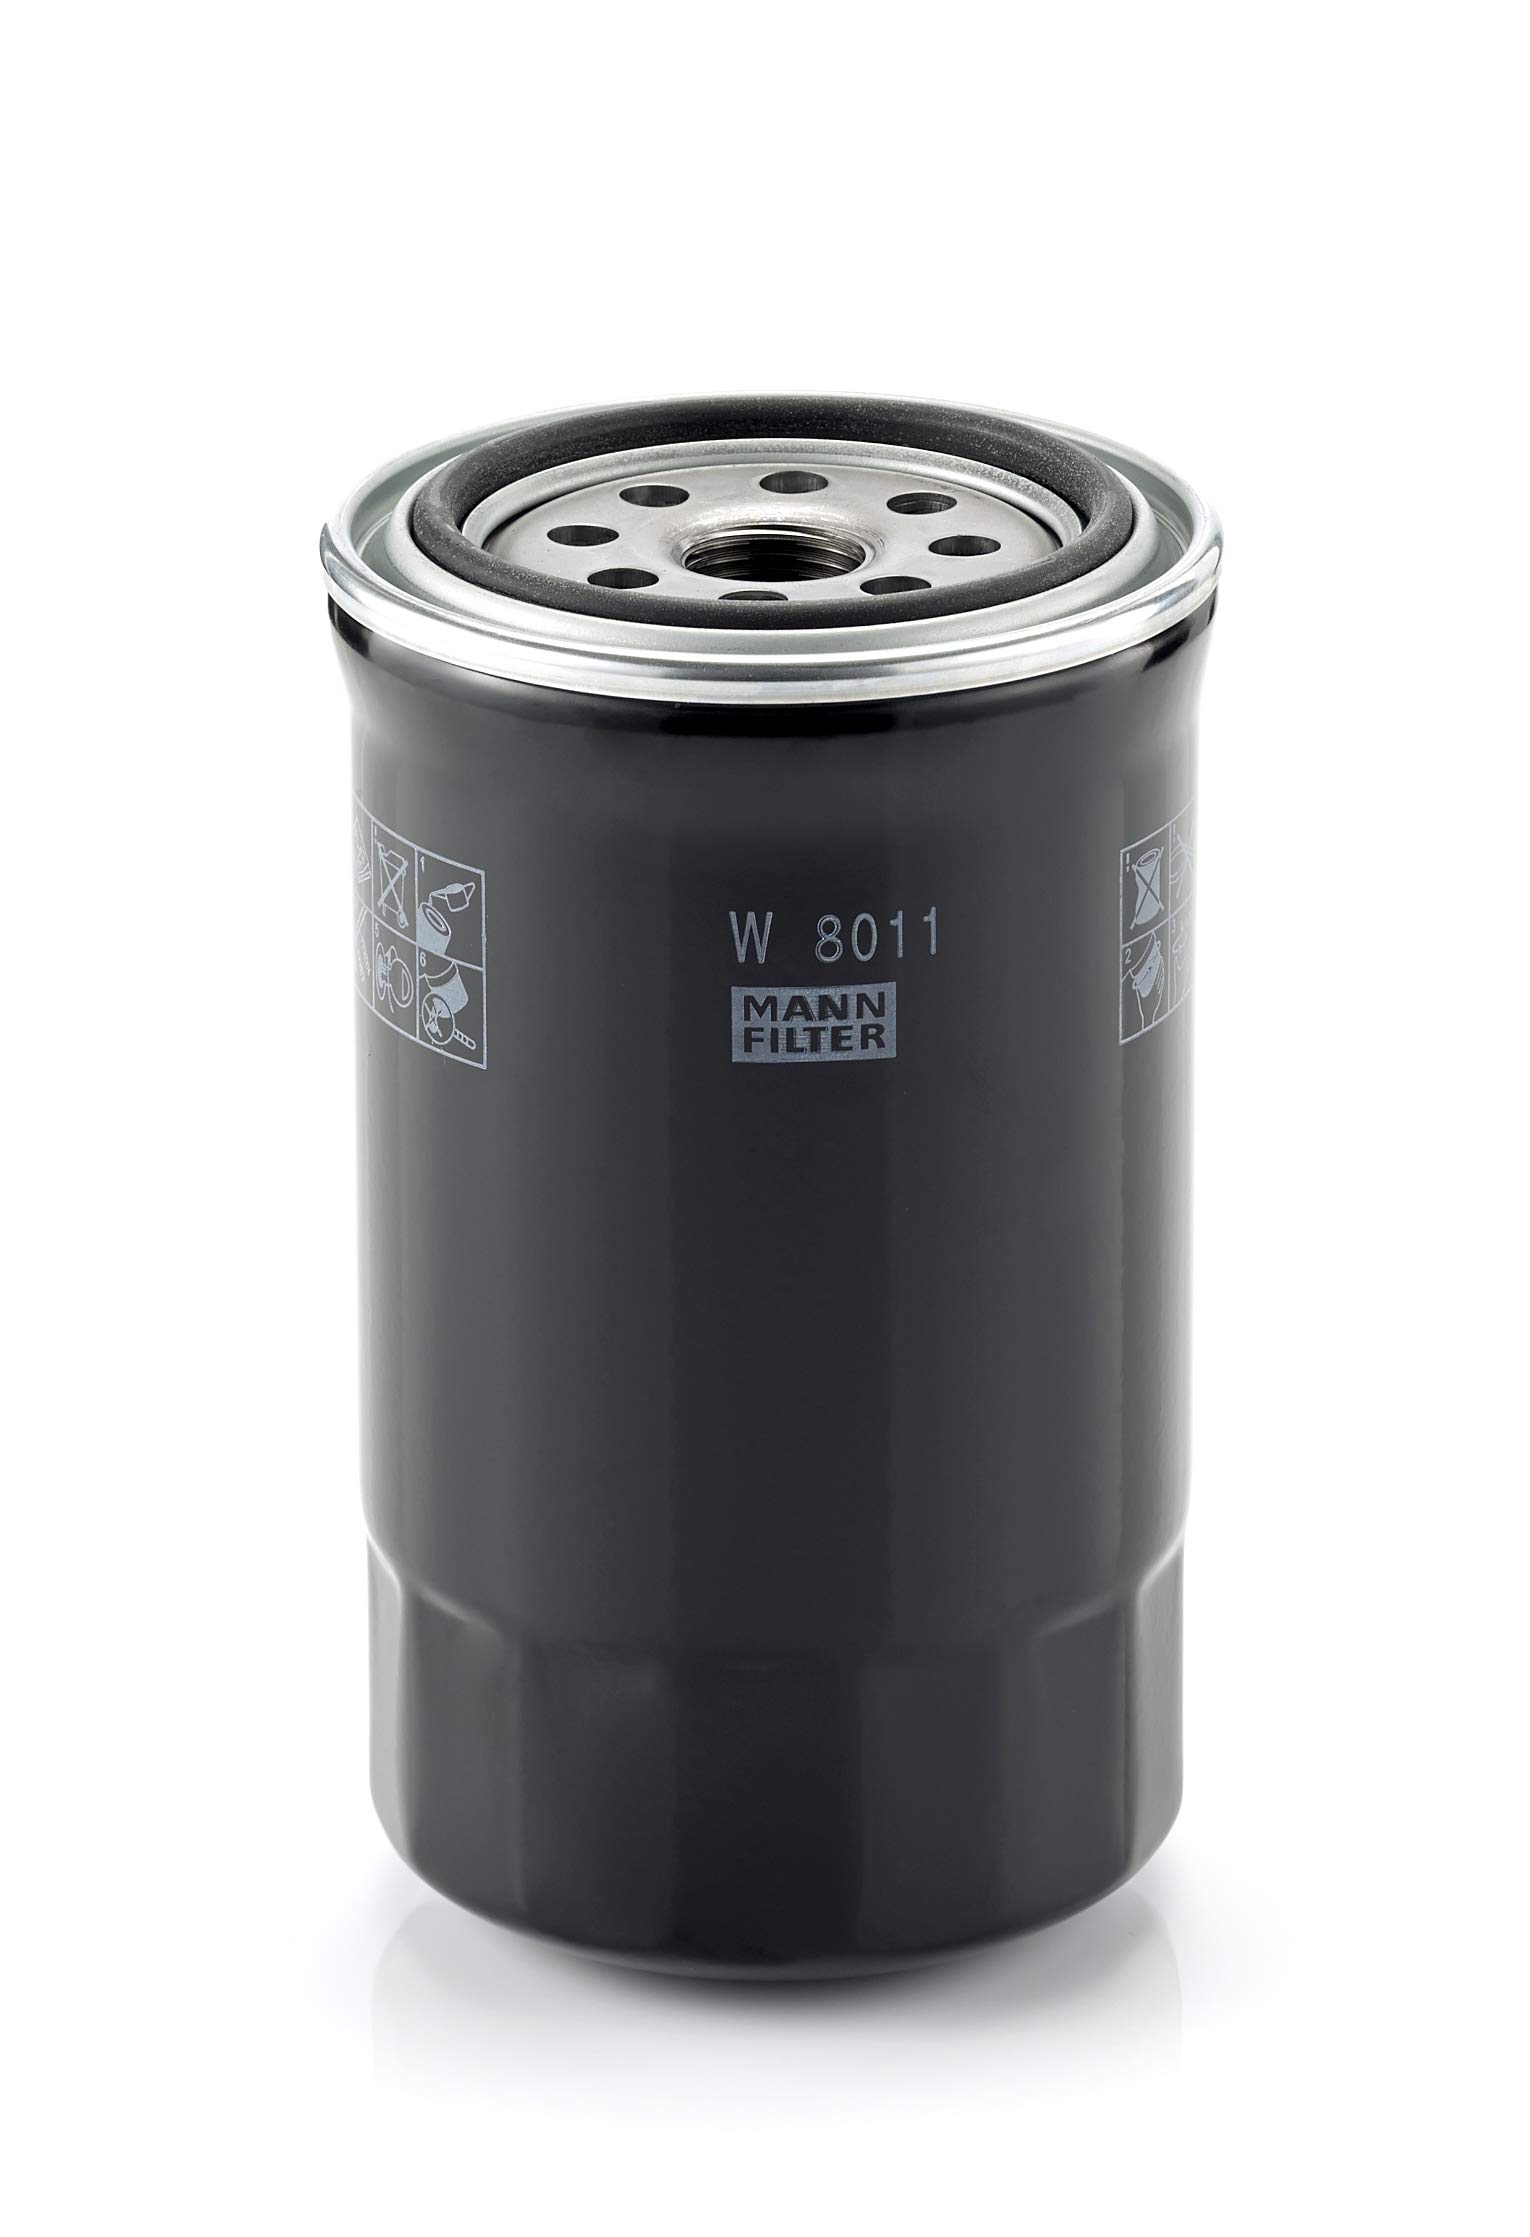 MANN-FILTER W 8011 Ölfilter – Oil Filter Right-hand drive – Für PKW von MANN-FILTER